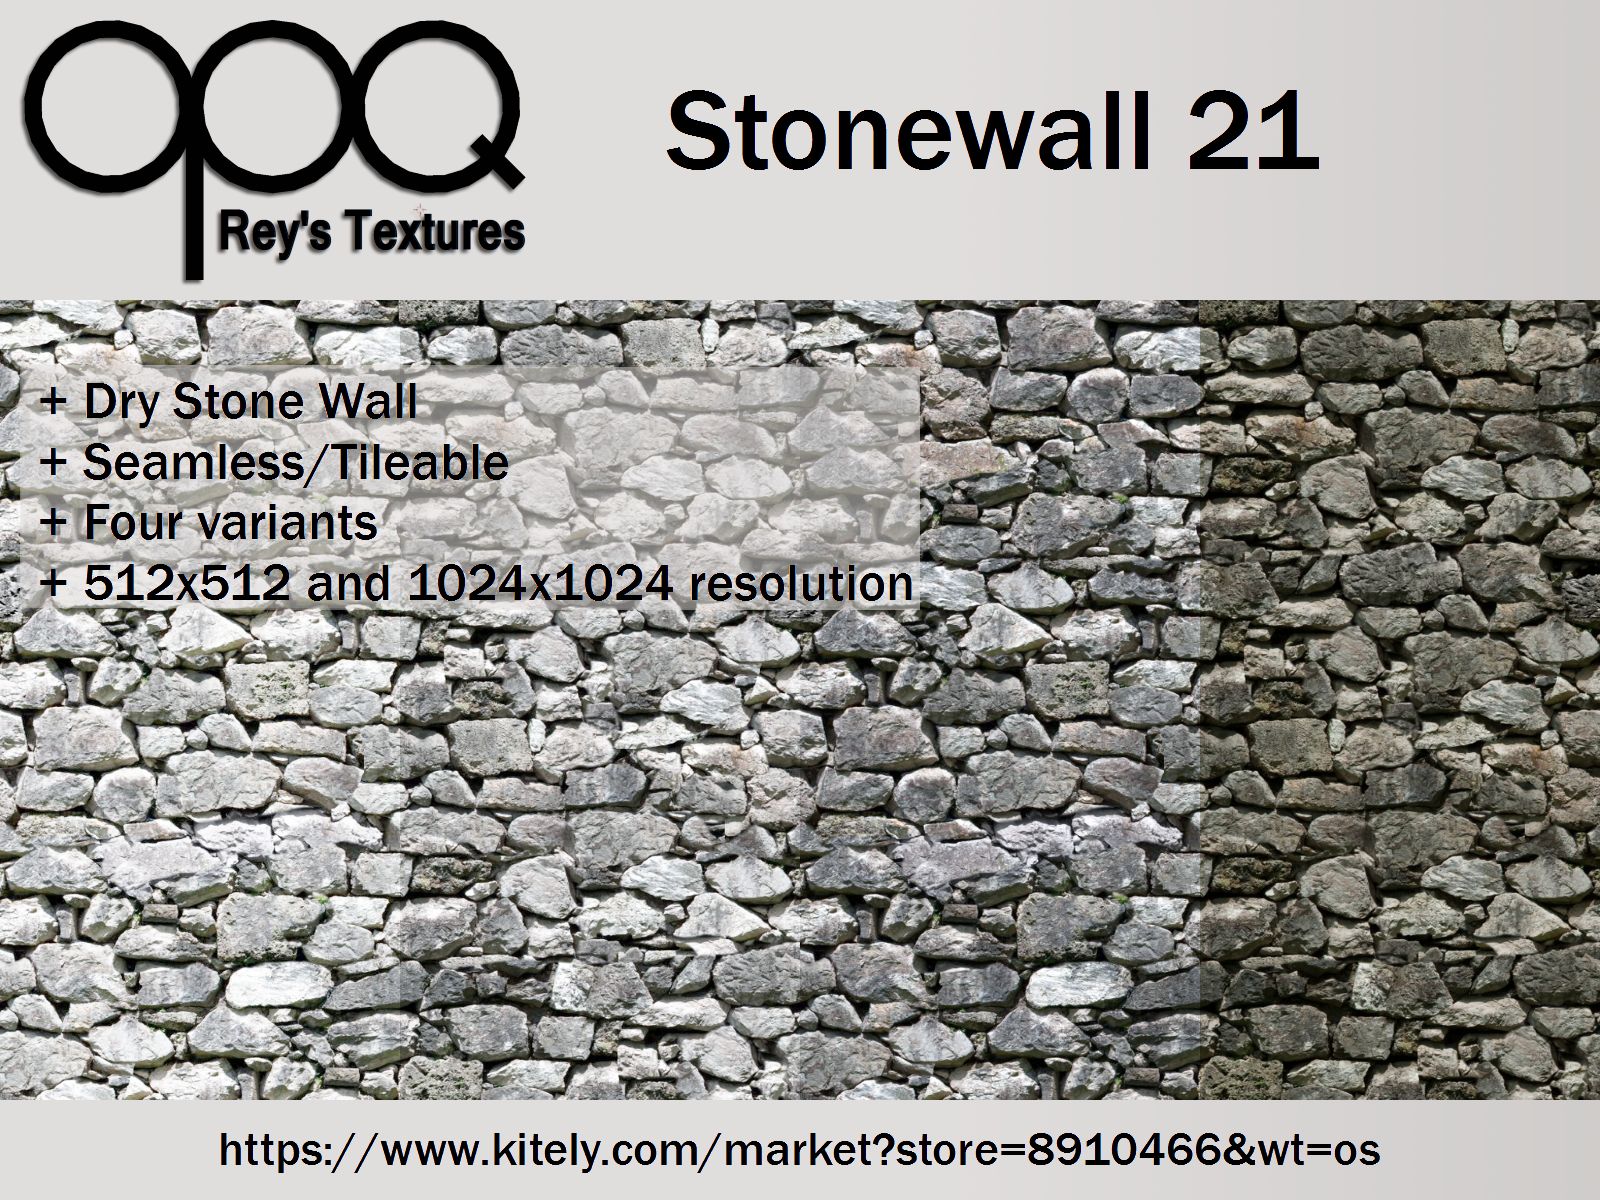 Rey's Stonewall 21 Poster Kitely.jpg